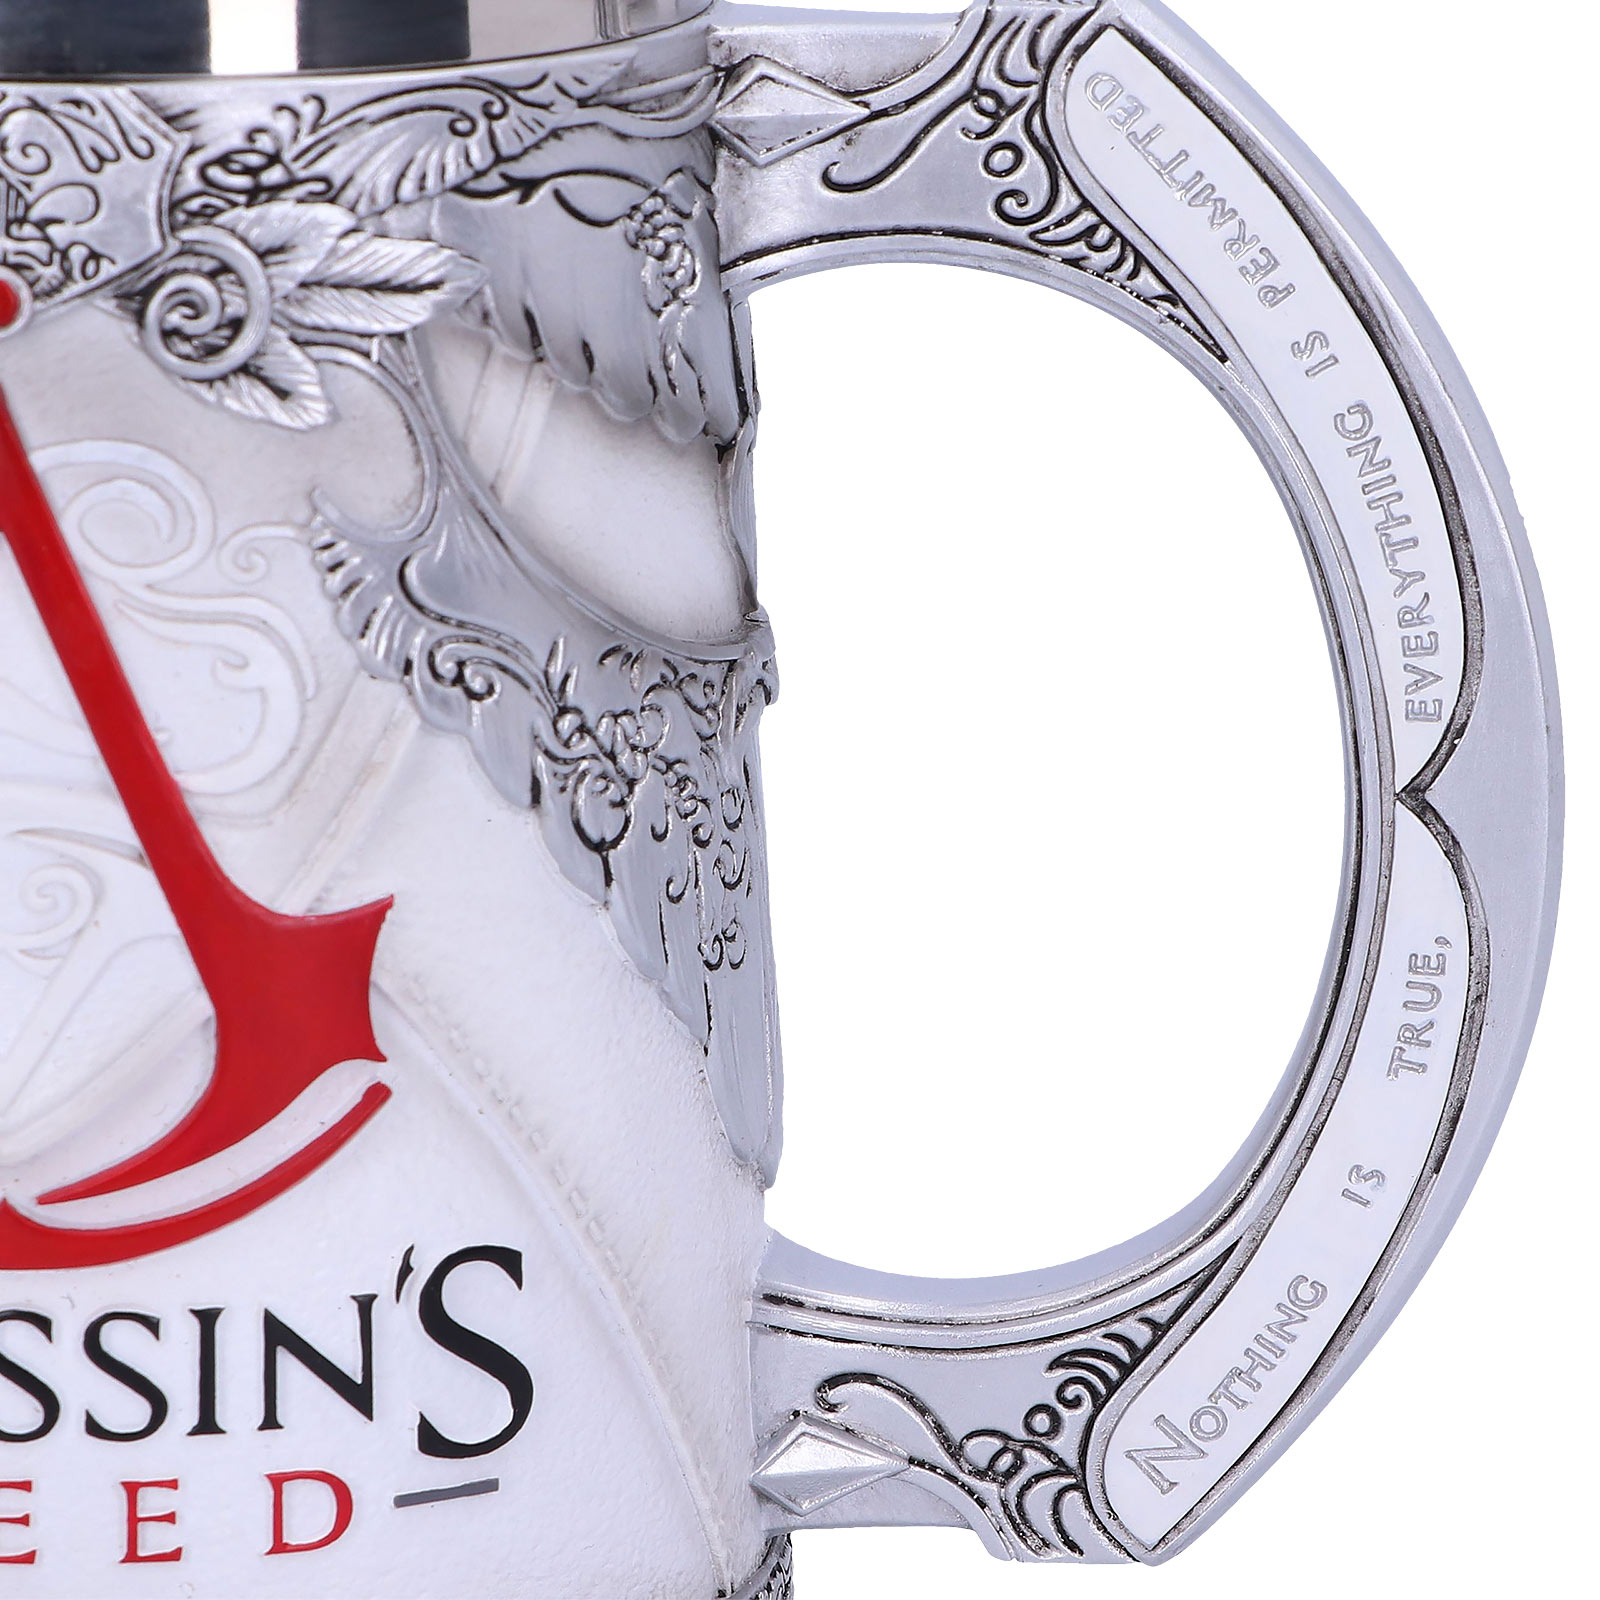 Assassin's Creed - Klassiek Logo Deluxe Mok